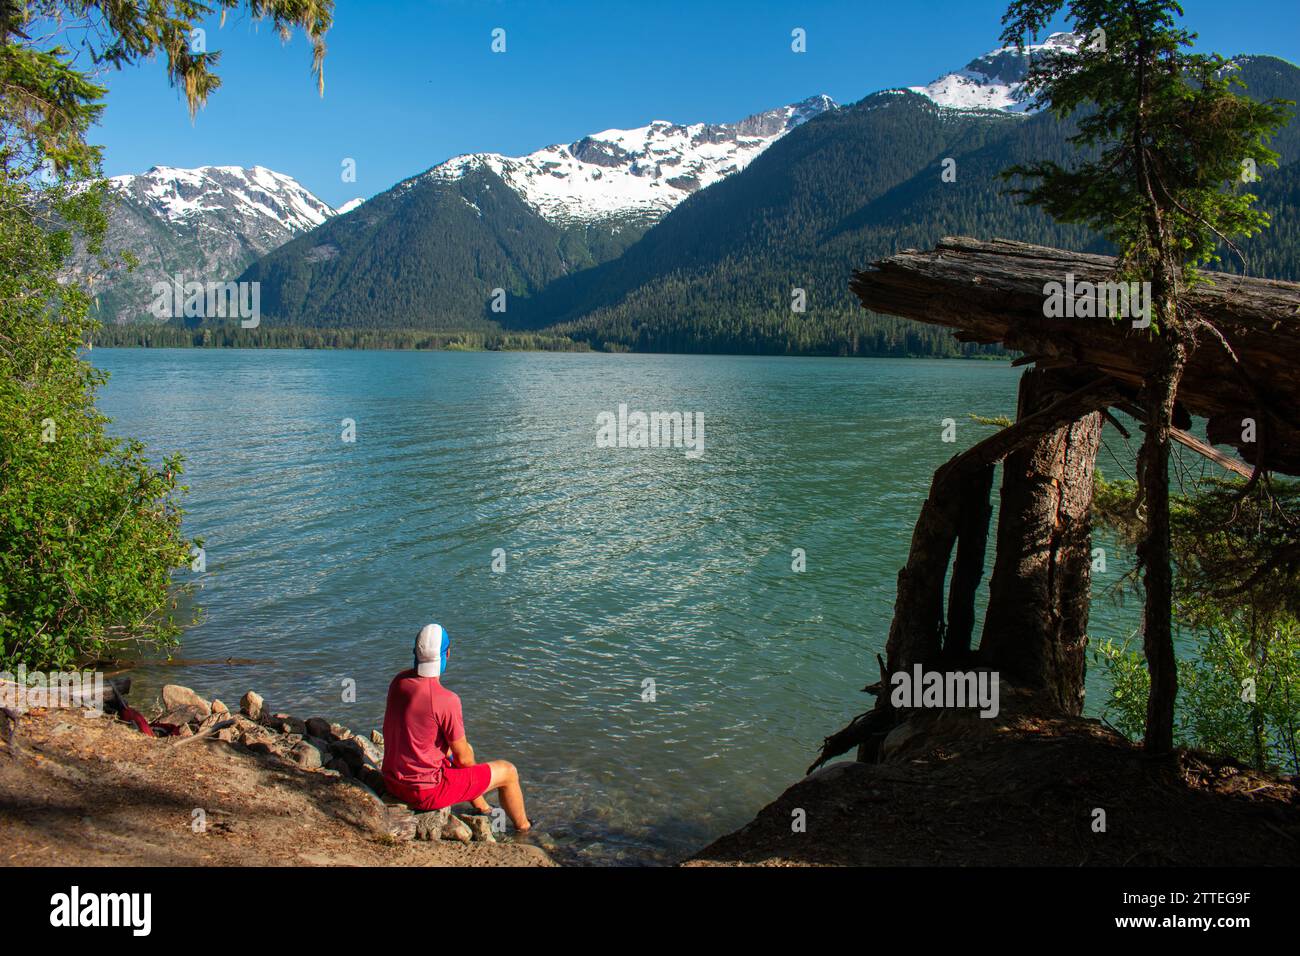 Un moment serein au lac Cheakamus où un individu trouve du réconfort dans les eaux glaciaires, entourées par la nature sauvage vierge de la Colombie-Britannique. Banque D'Images